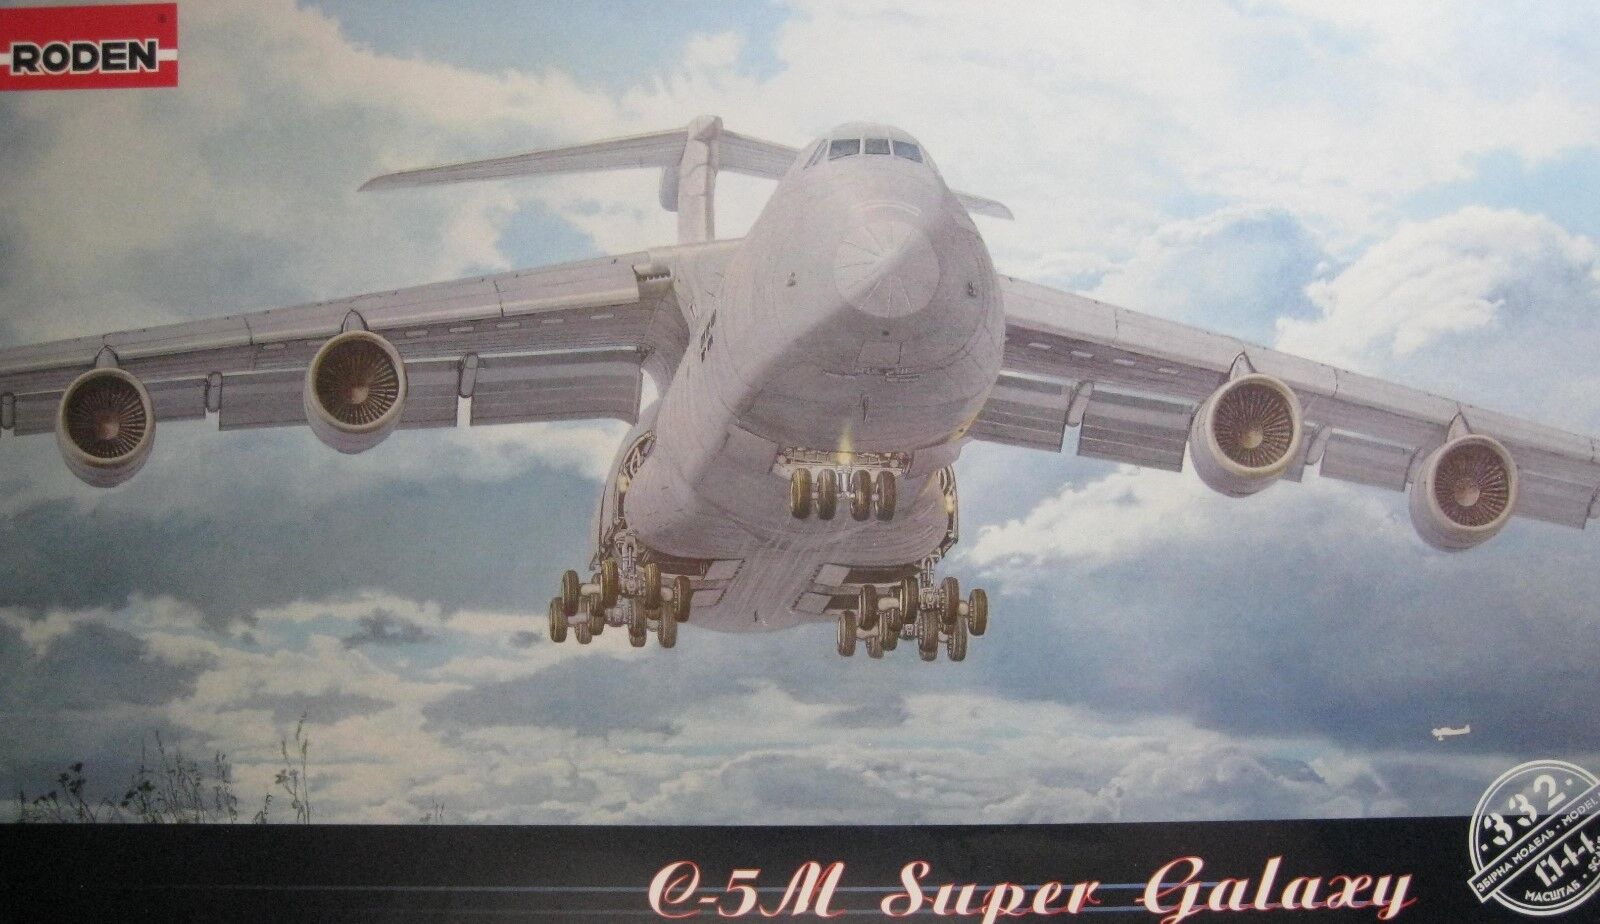 1/144 Lockheed C-5M Super Galaxy Model Kit by Roden Ograniczona ilość, najnowsza praca